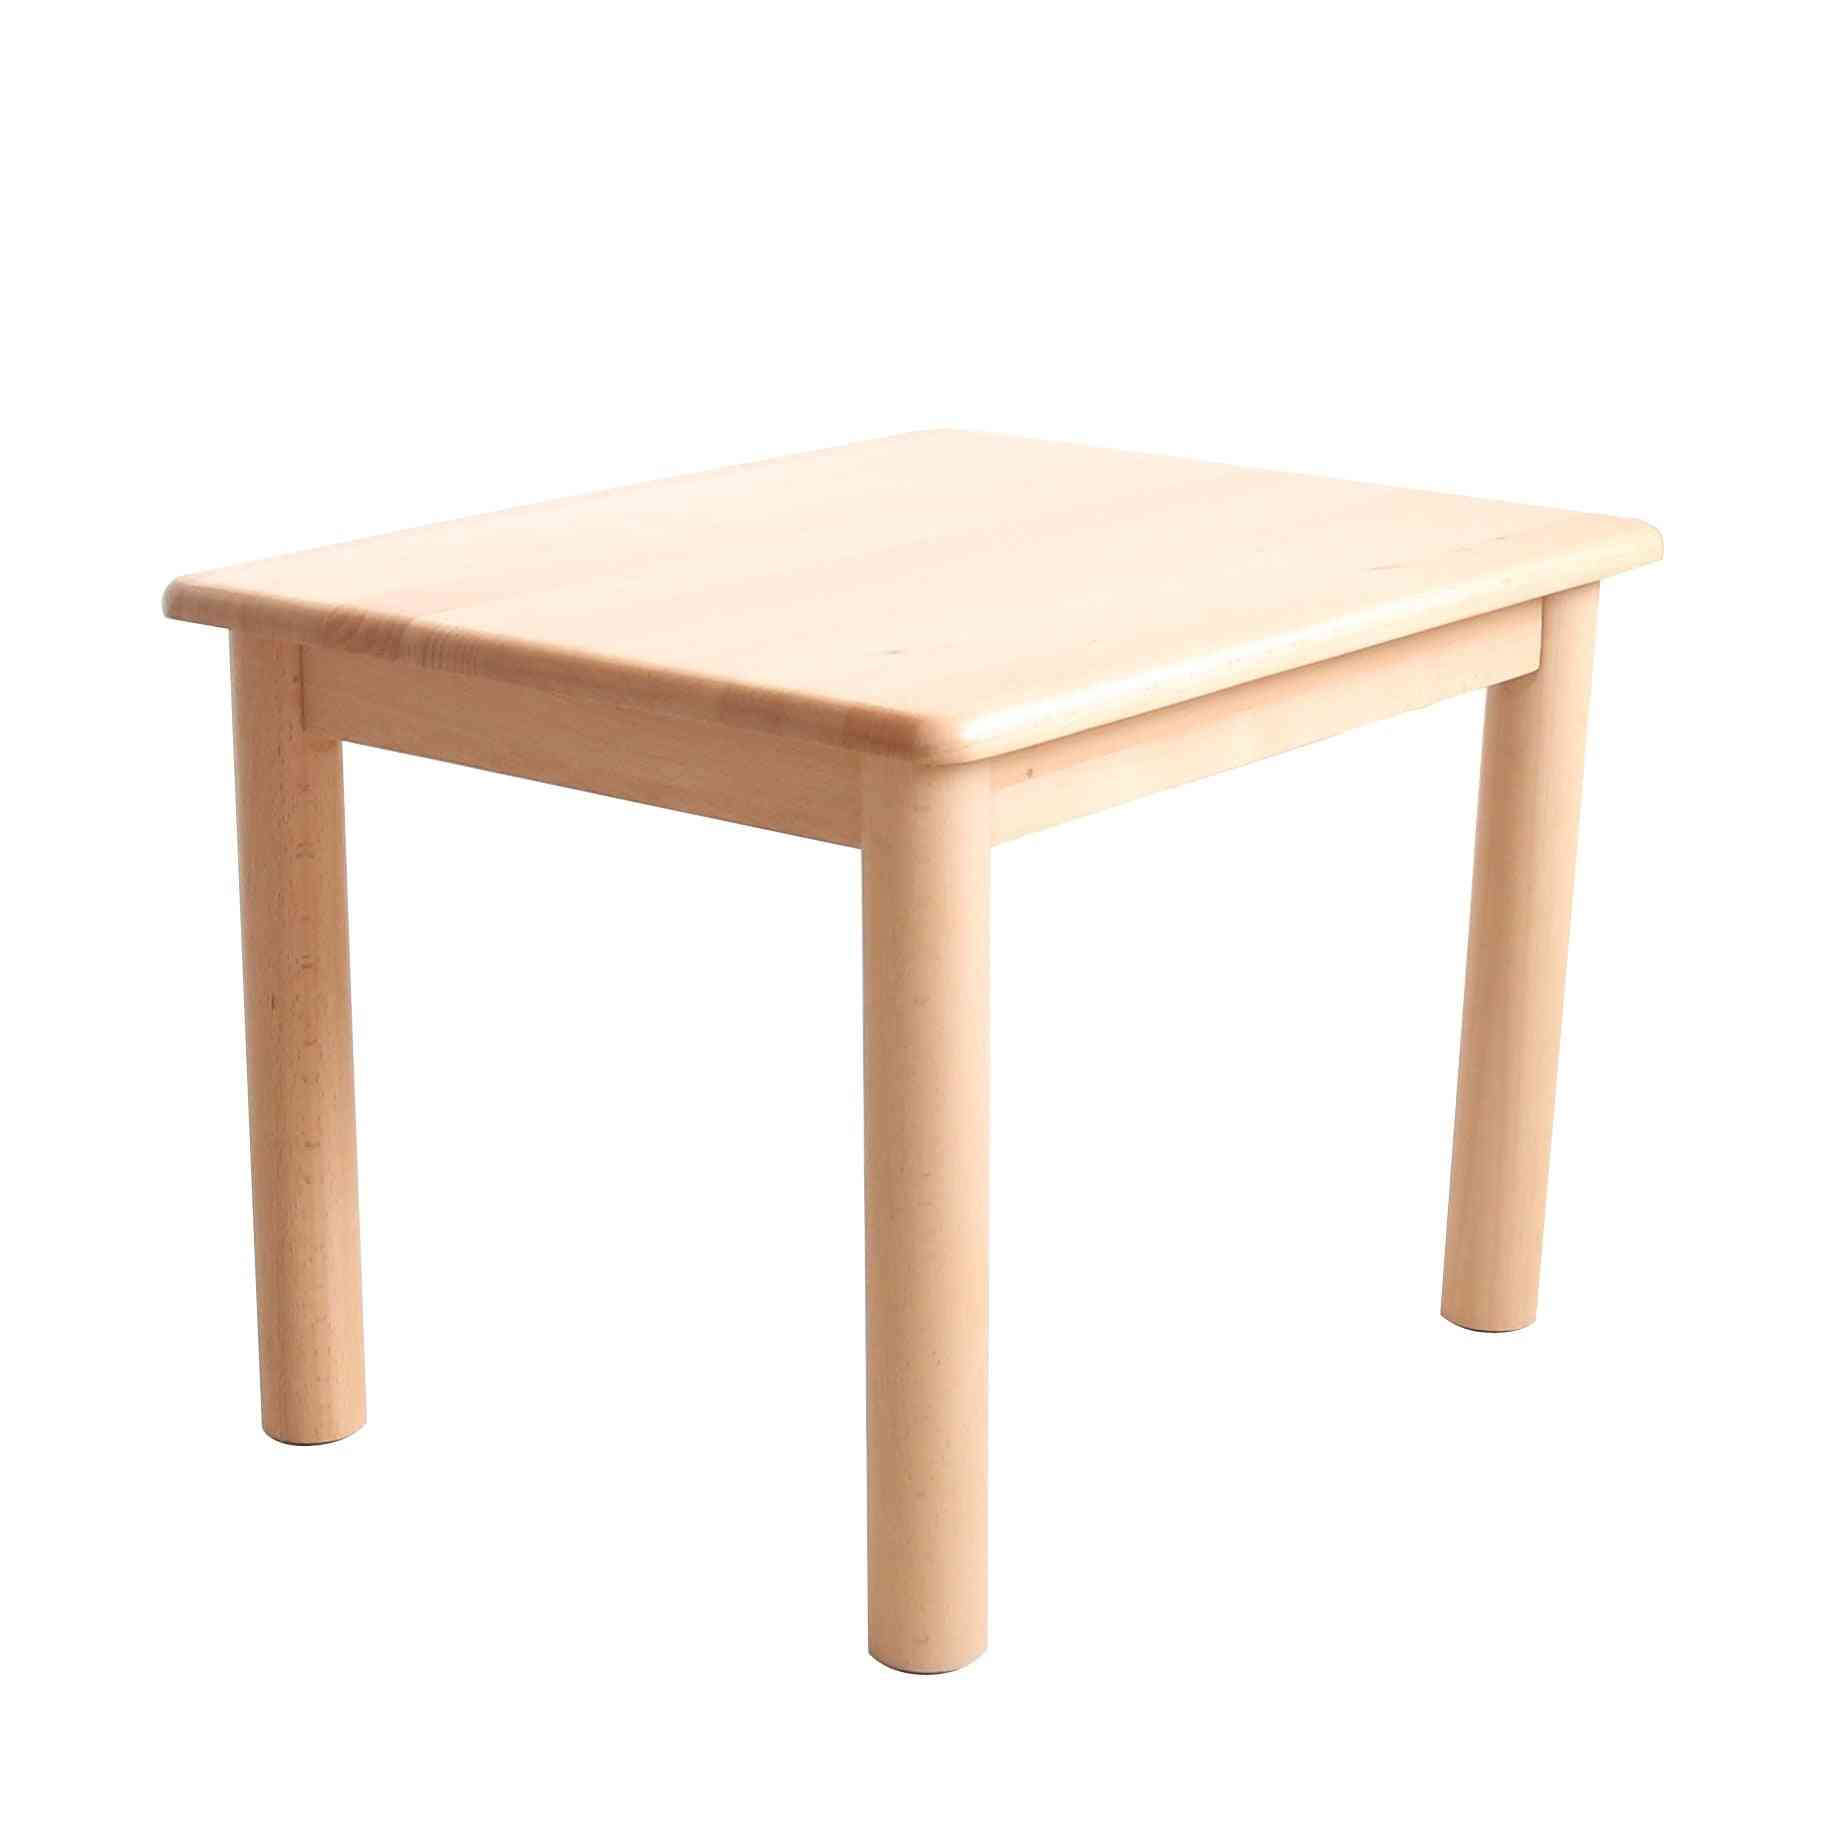 Przedszkole z litego drewna mały stół do nauki/jadalni